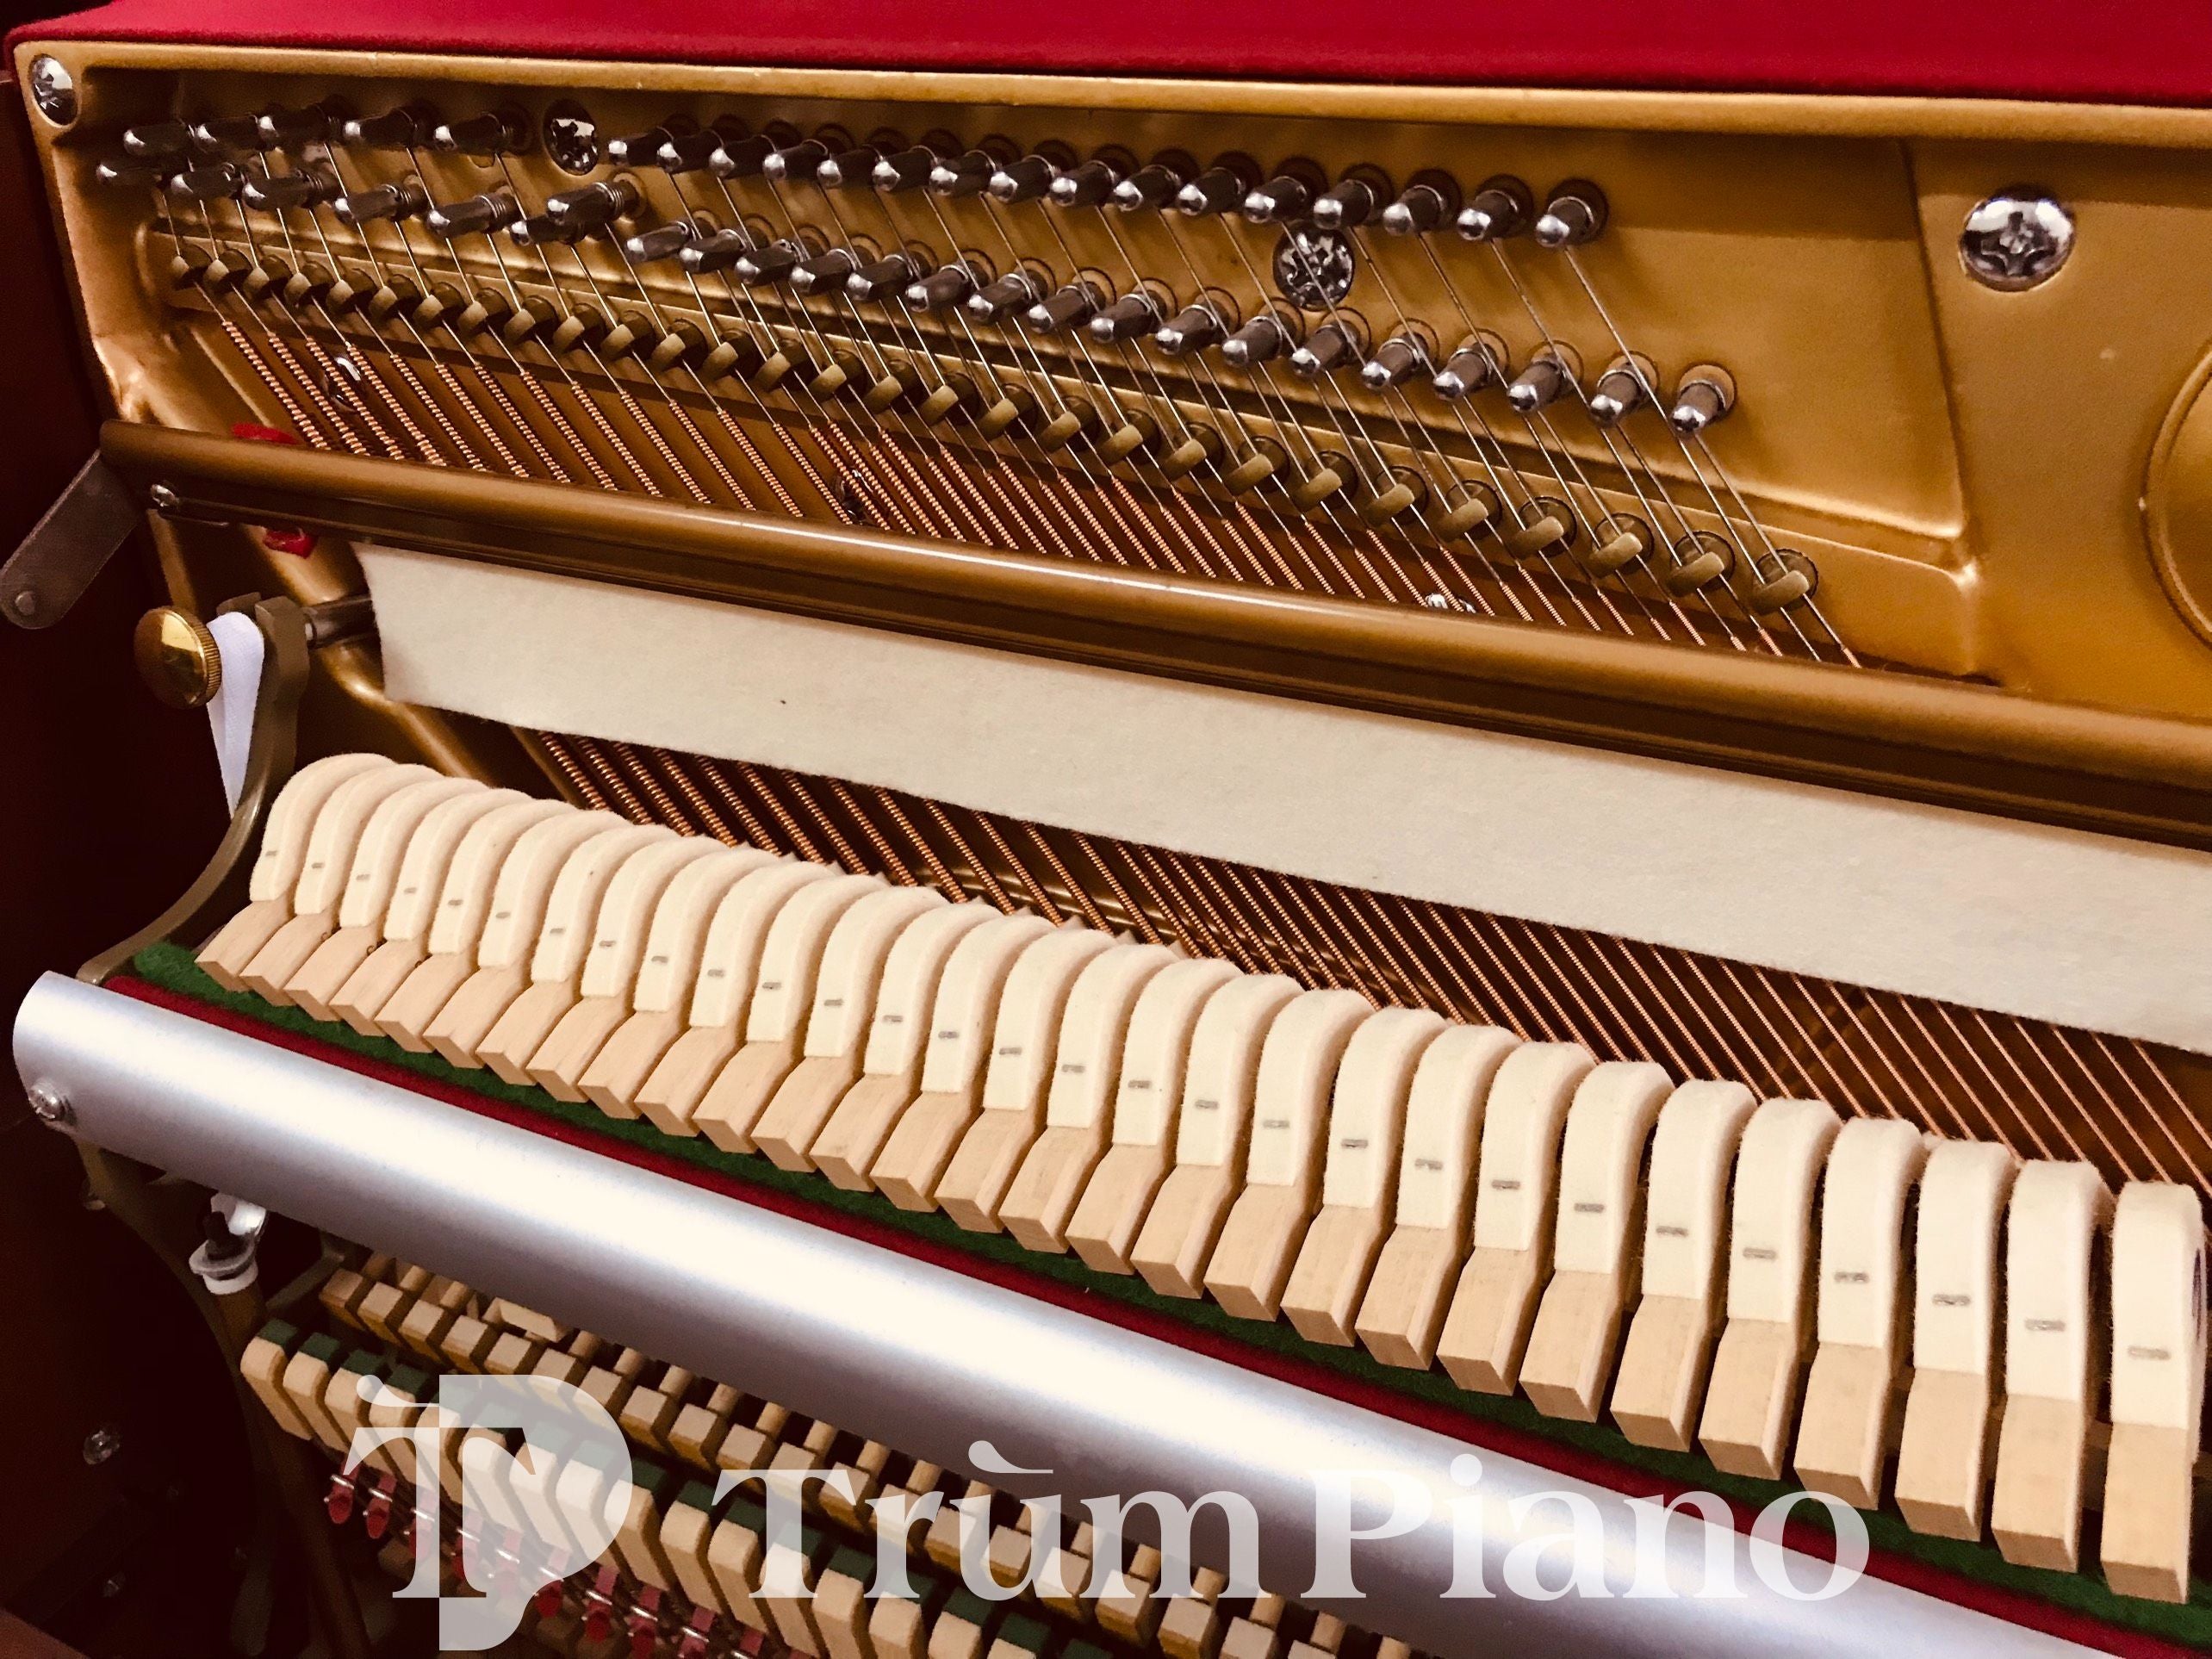 Đàn Piano WENDL&LUNG  U118WH